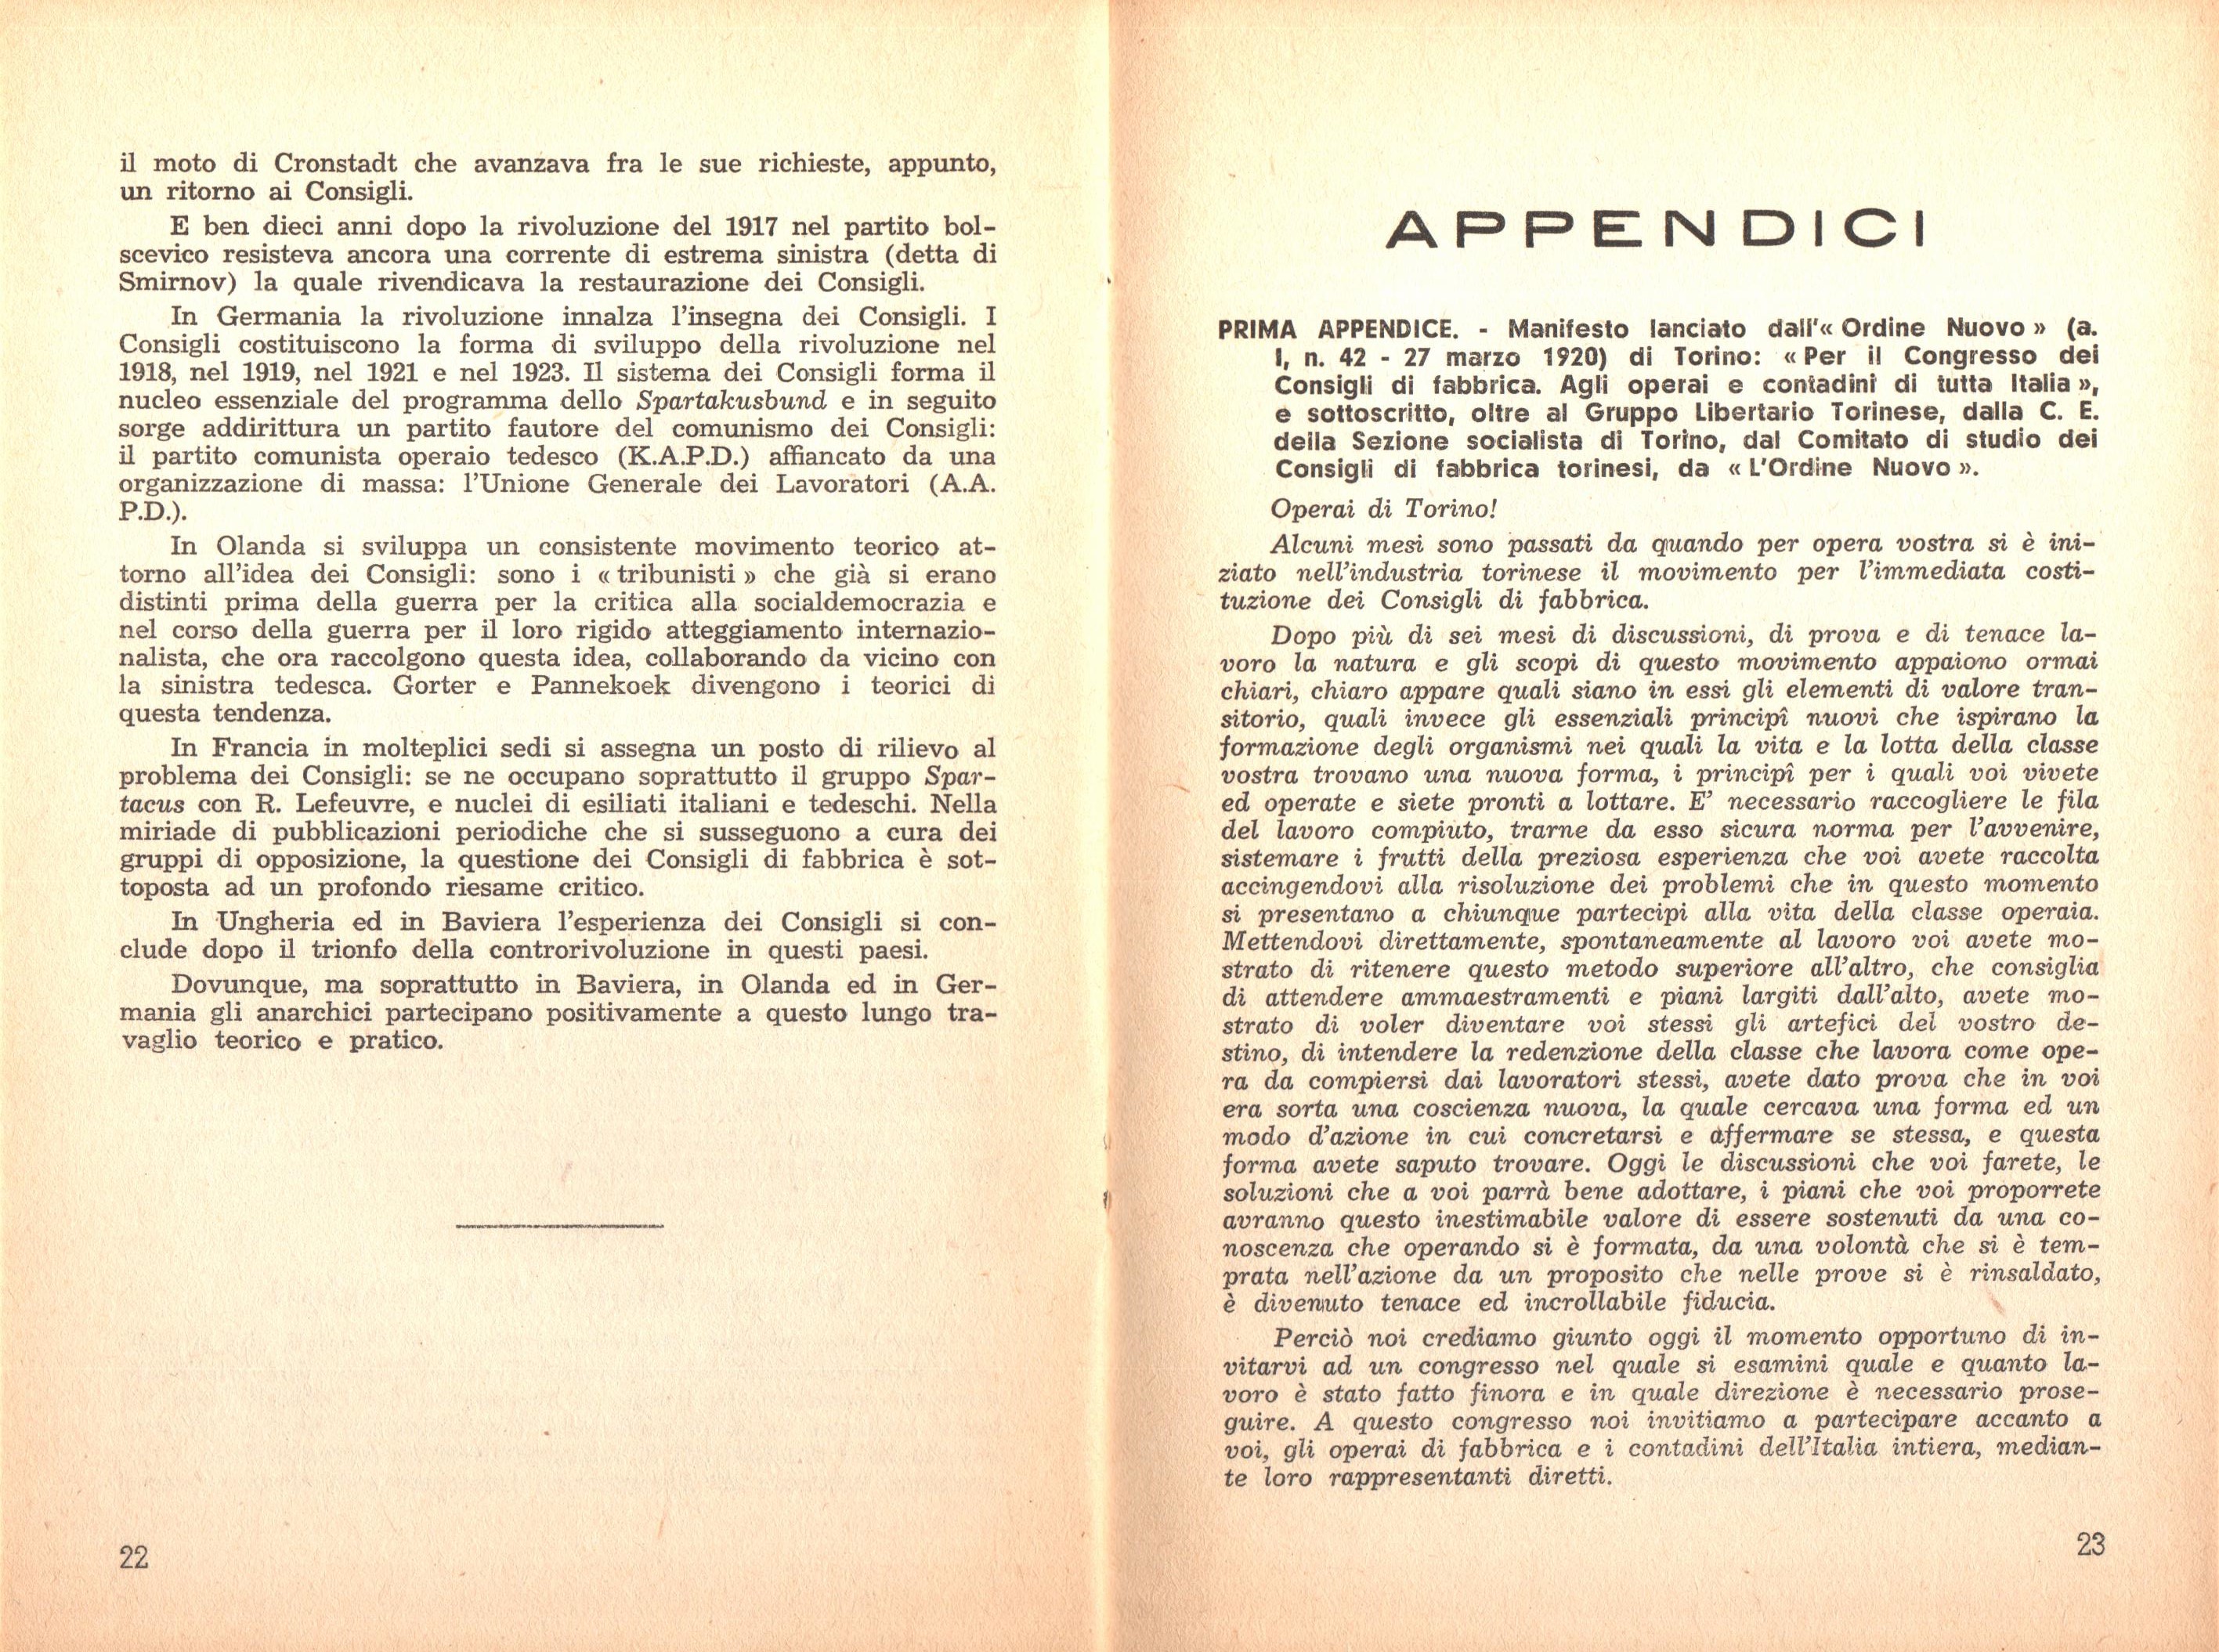 P. C. Masini, Anarchici e comunisti nel movimento dei Consigli a Torino - pag. 13 